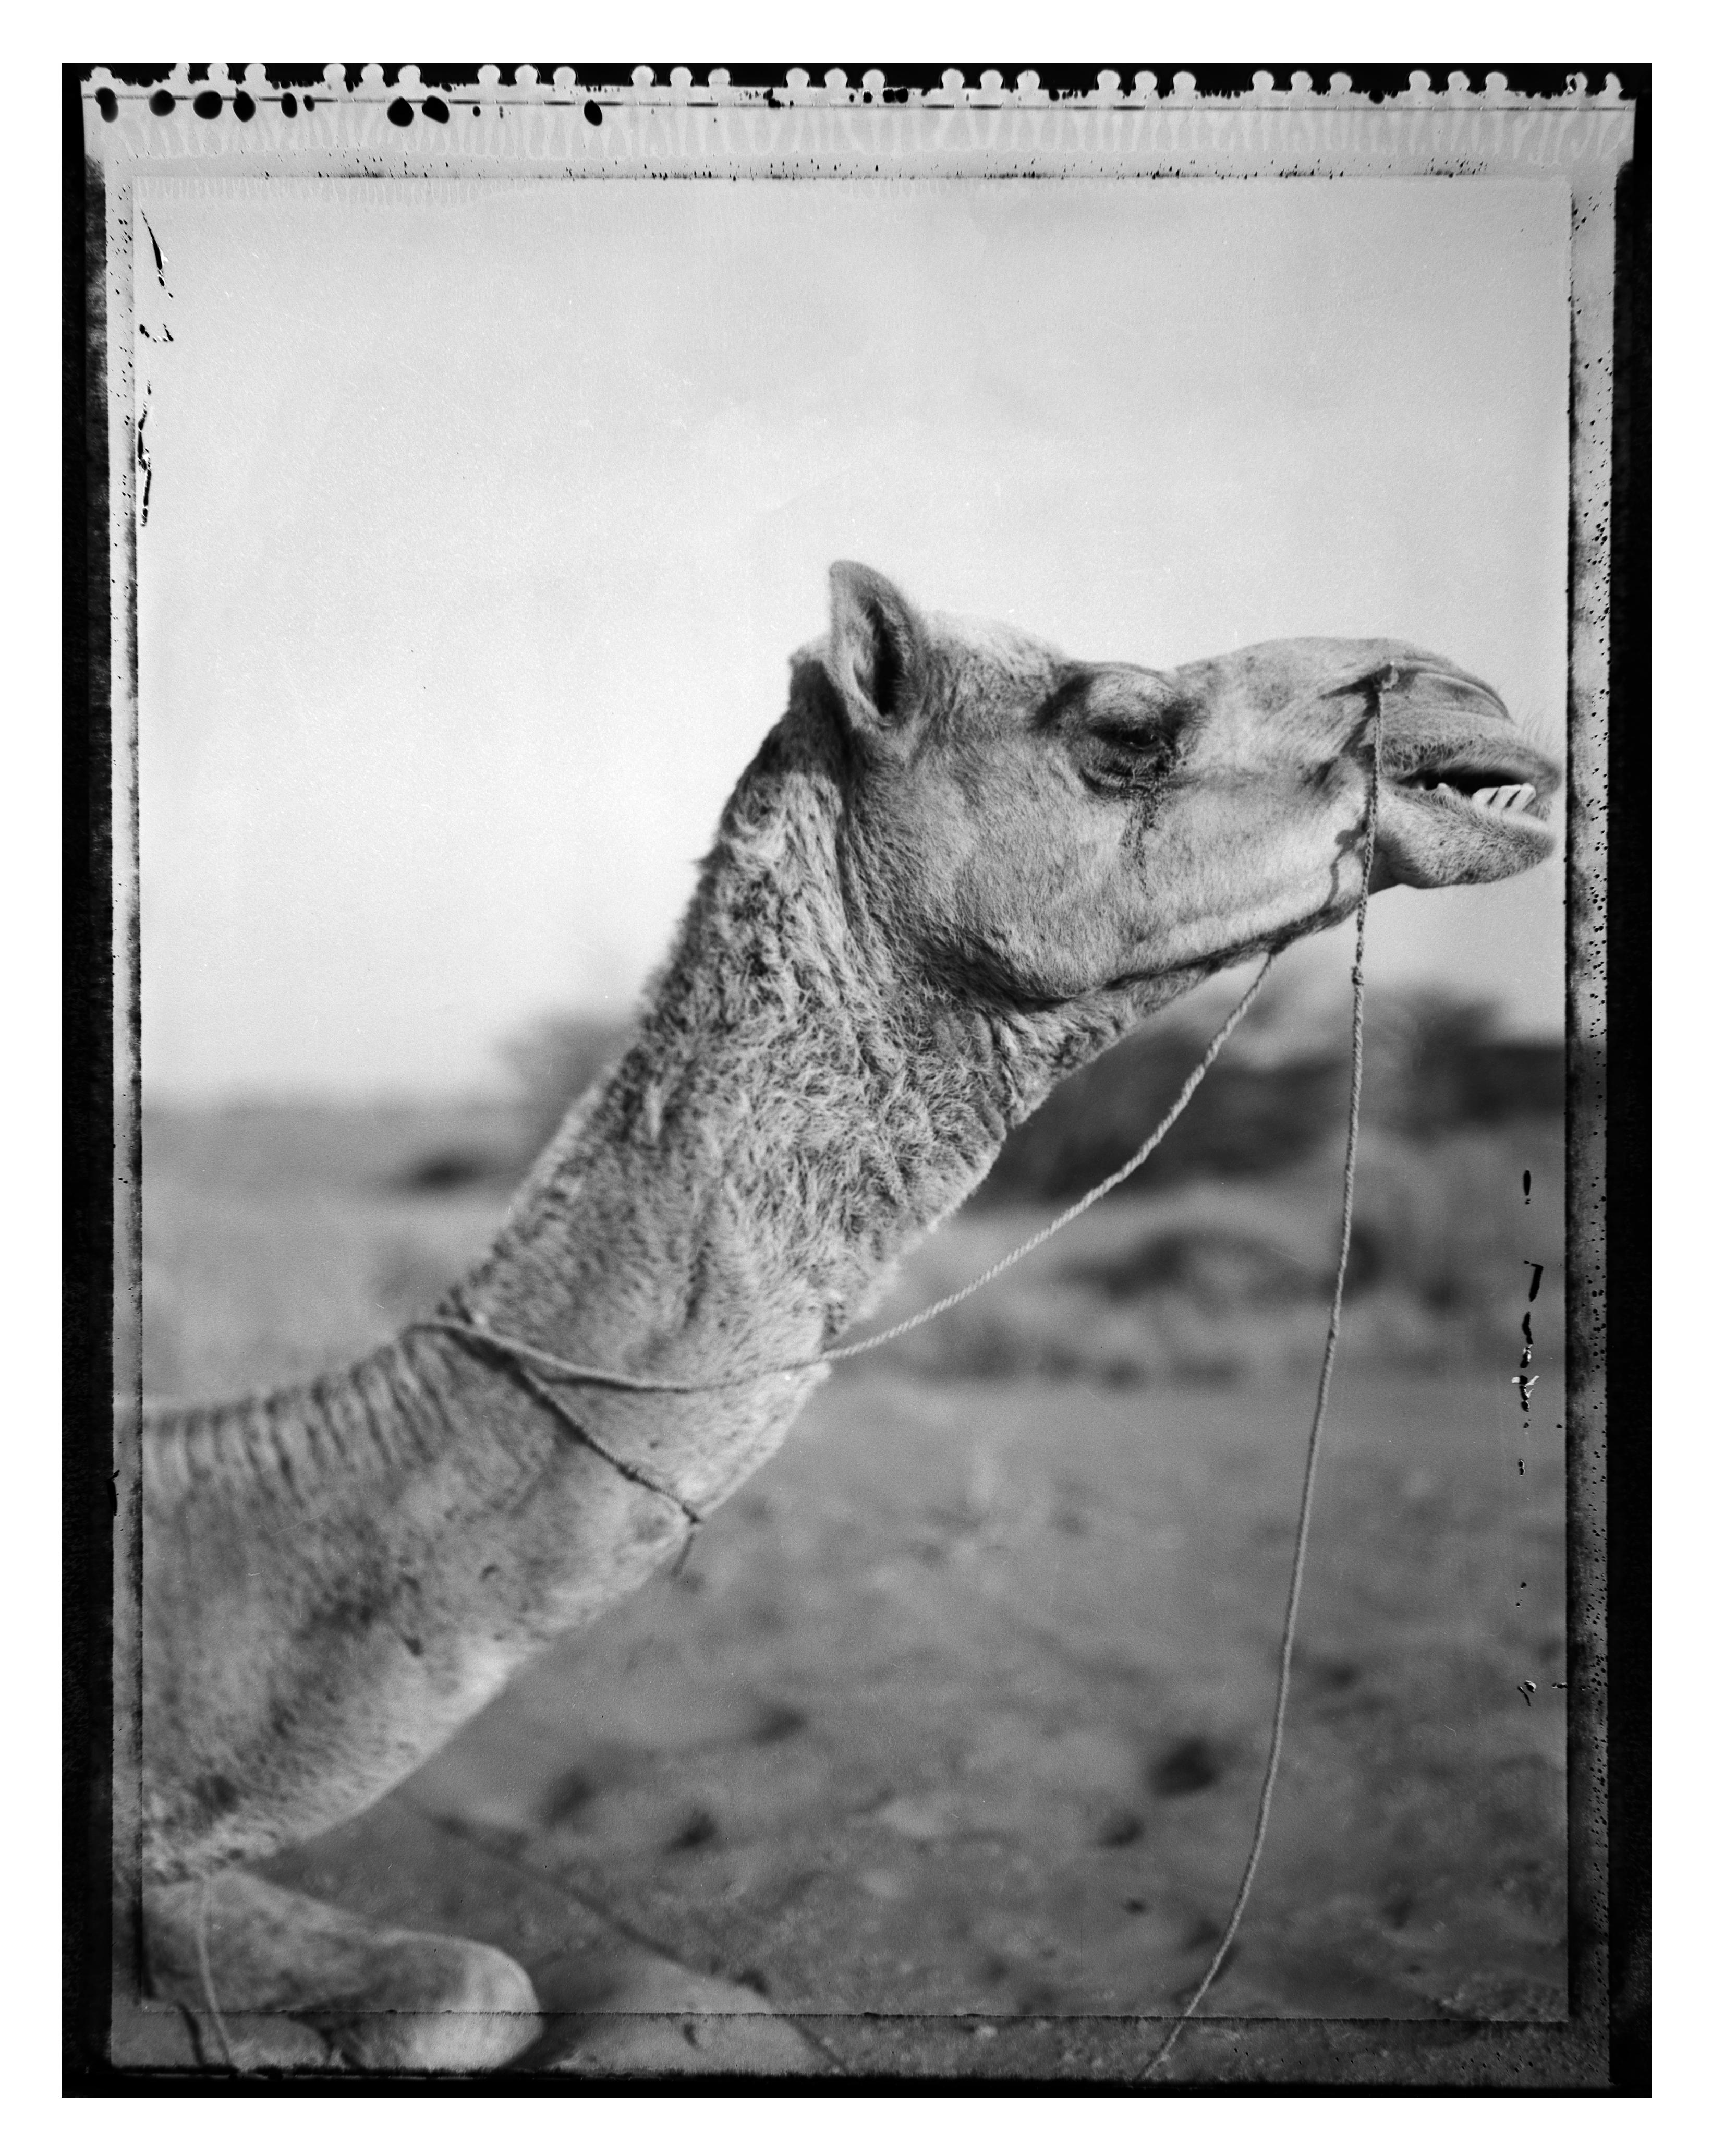 Un chameau dans les dunes de sable  - Rajastan -Inde (d'une série de Stills indiennes)